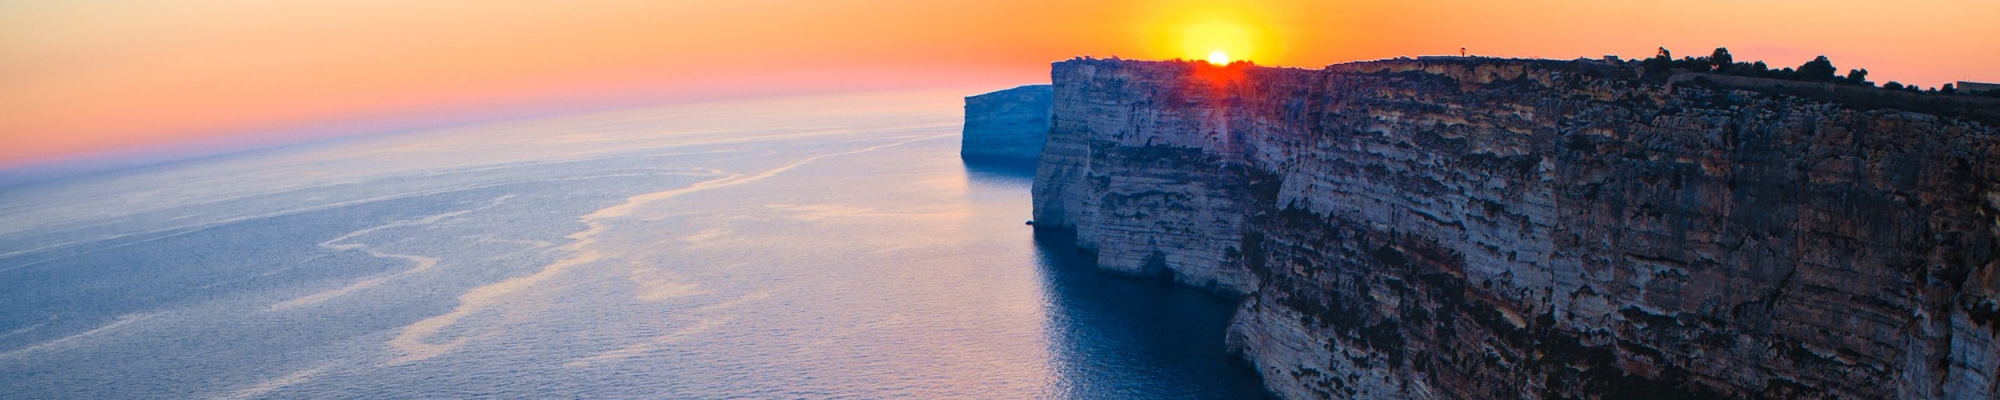 Îles Malte